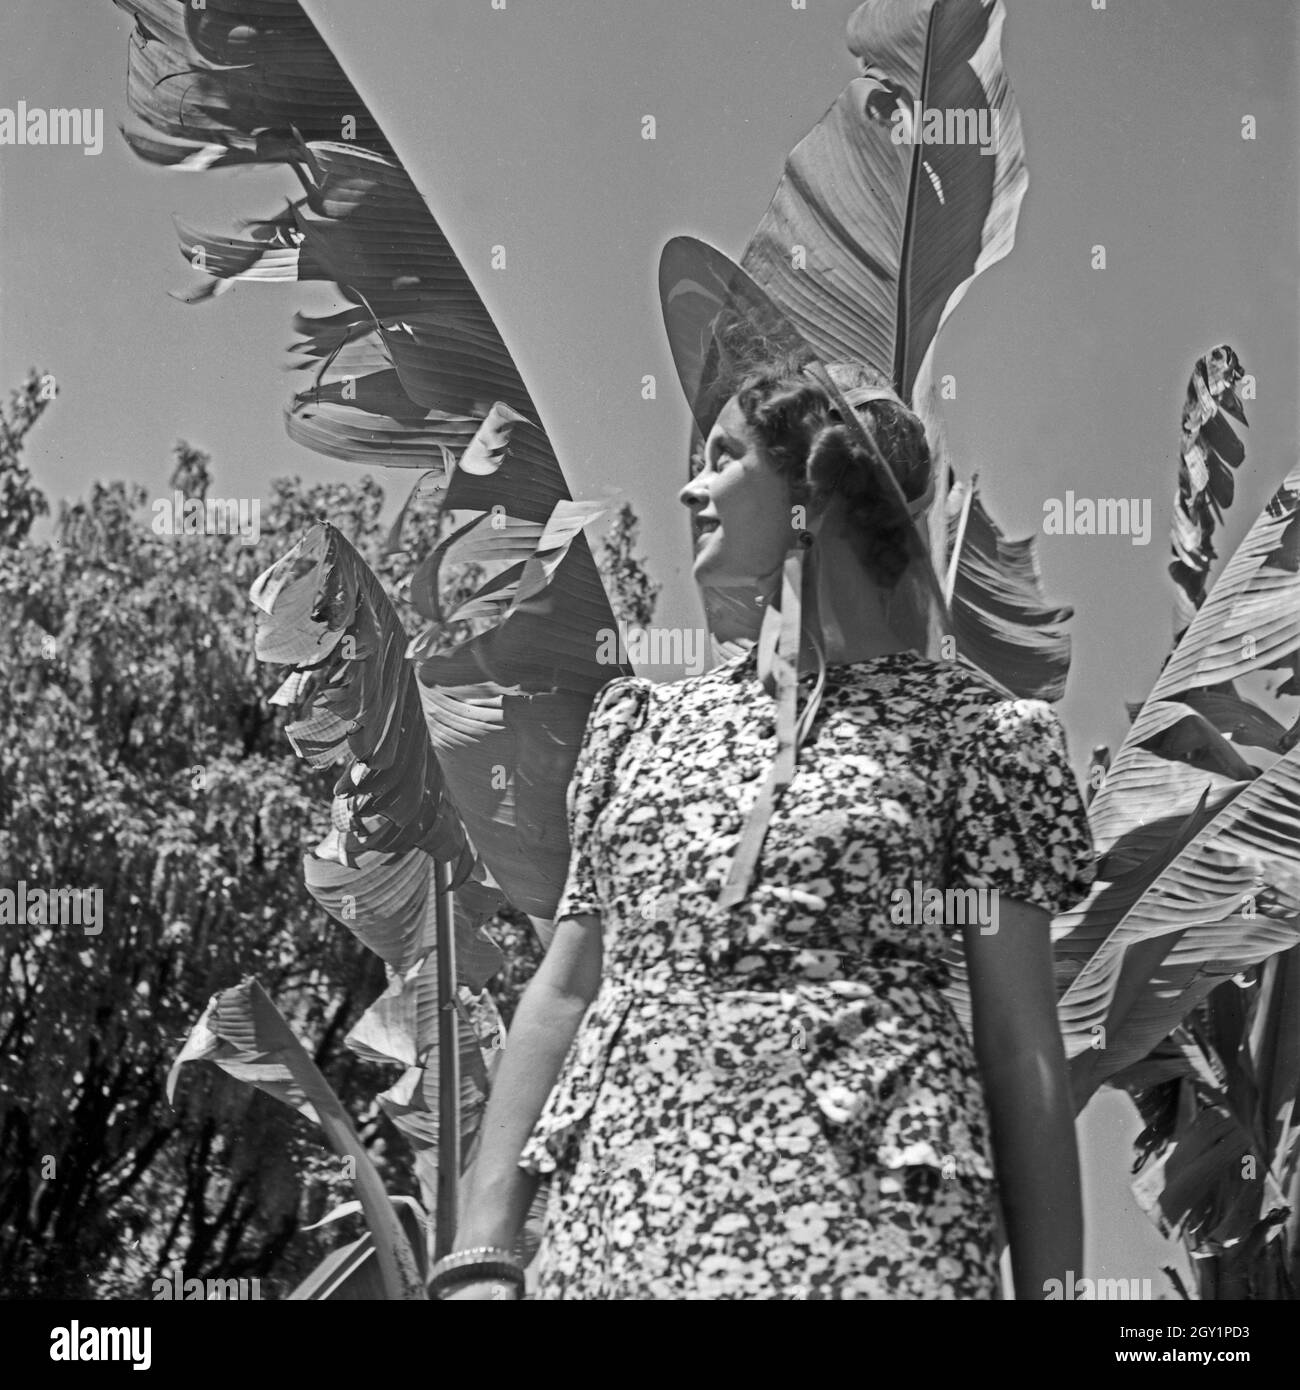 Eine junge Frau posiert vor einer Palme dans un parc, Deutschland 1930 er Jahre. Une jeune femme posant devant un palmier dans un parc public, l'Allemagne des années 1930. Banque D'Images